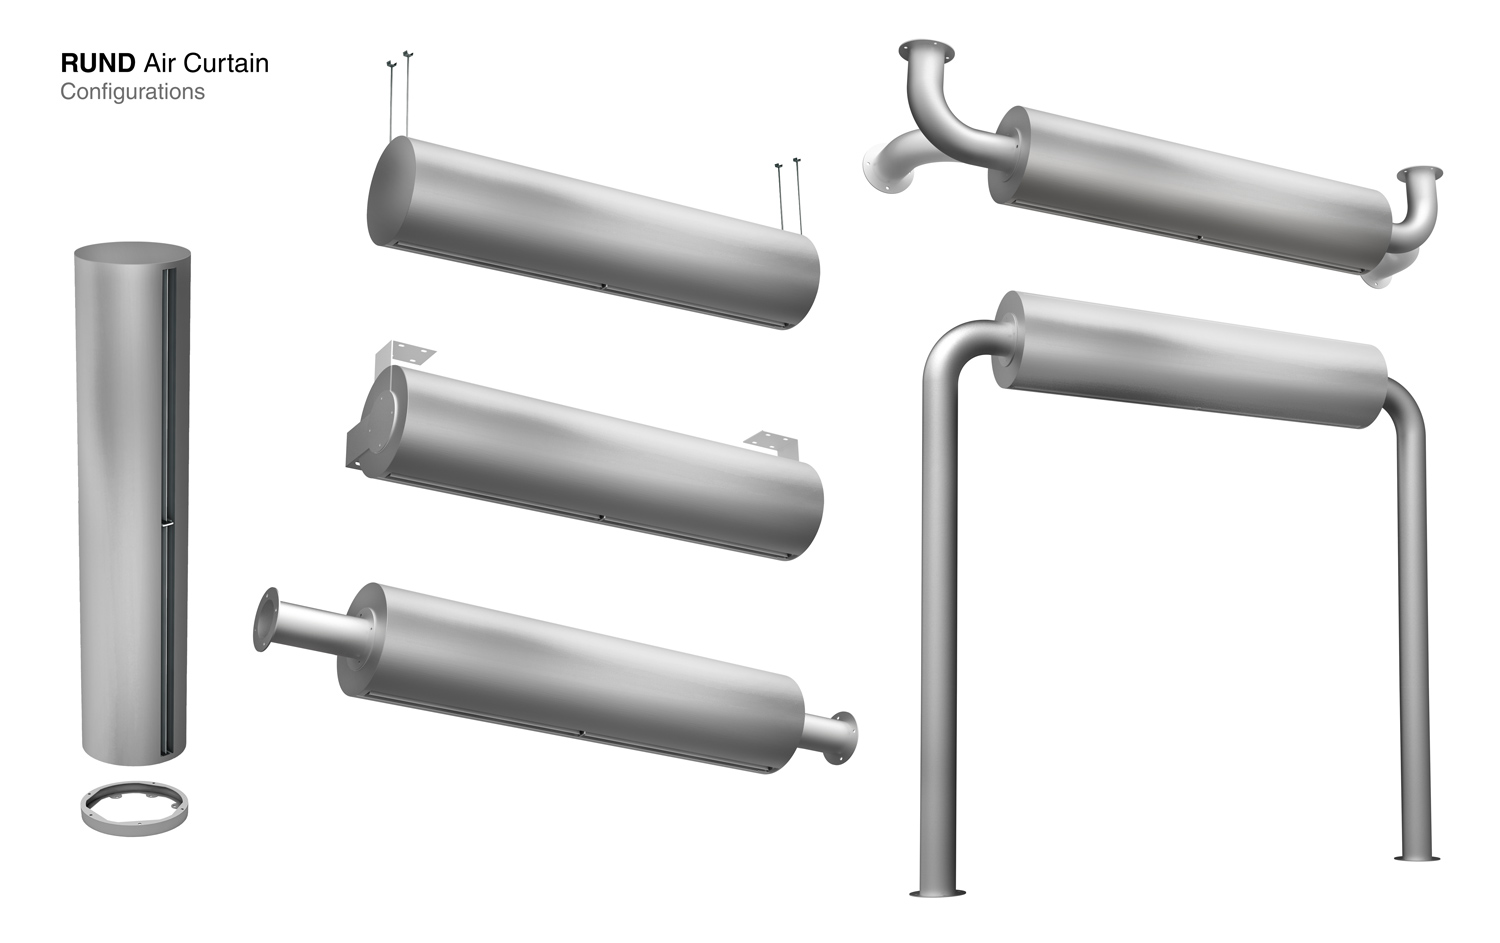 Distintas configuraciones de soportes del modelo de cortina de aire Rund